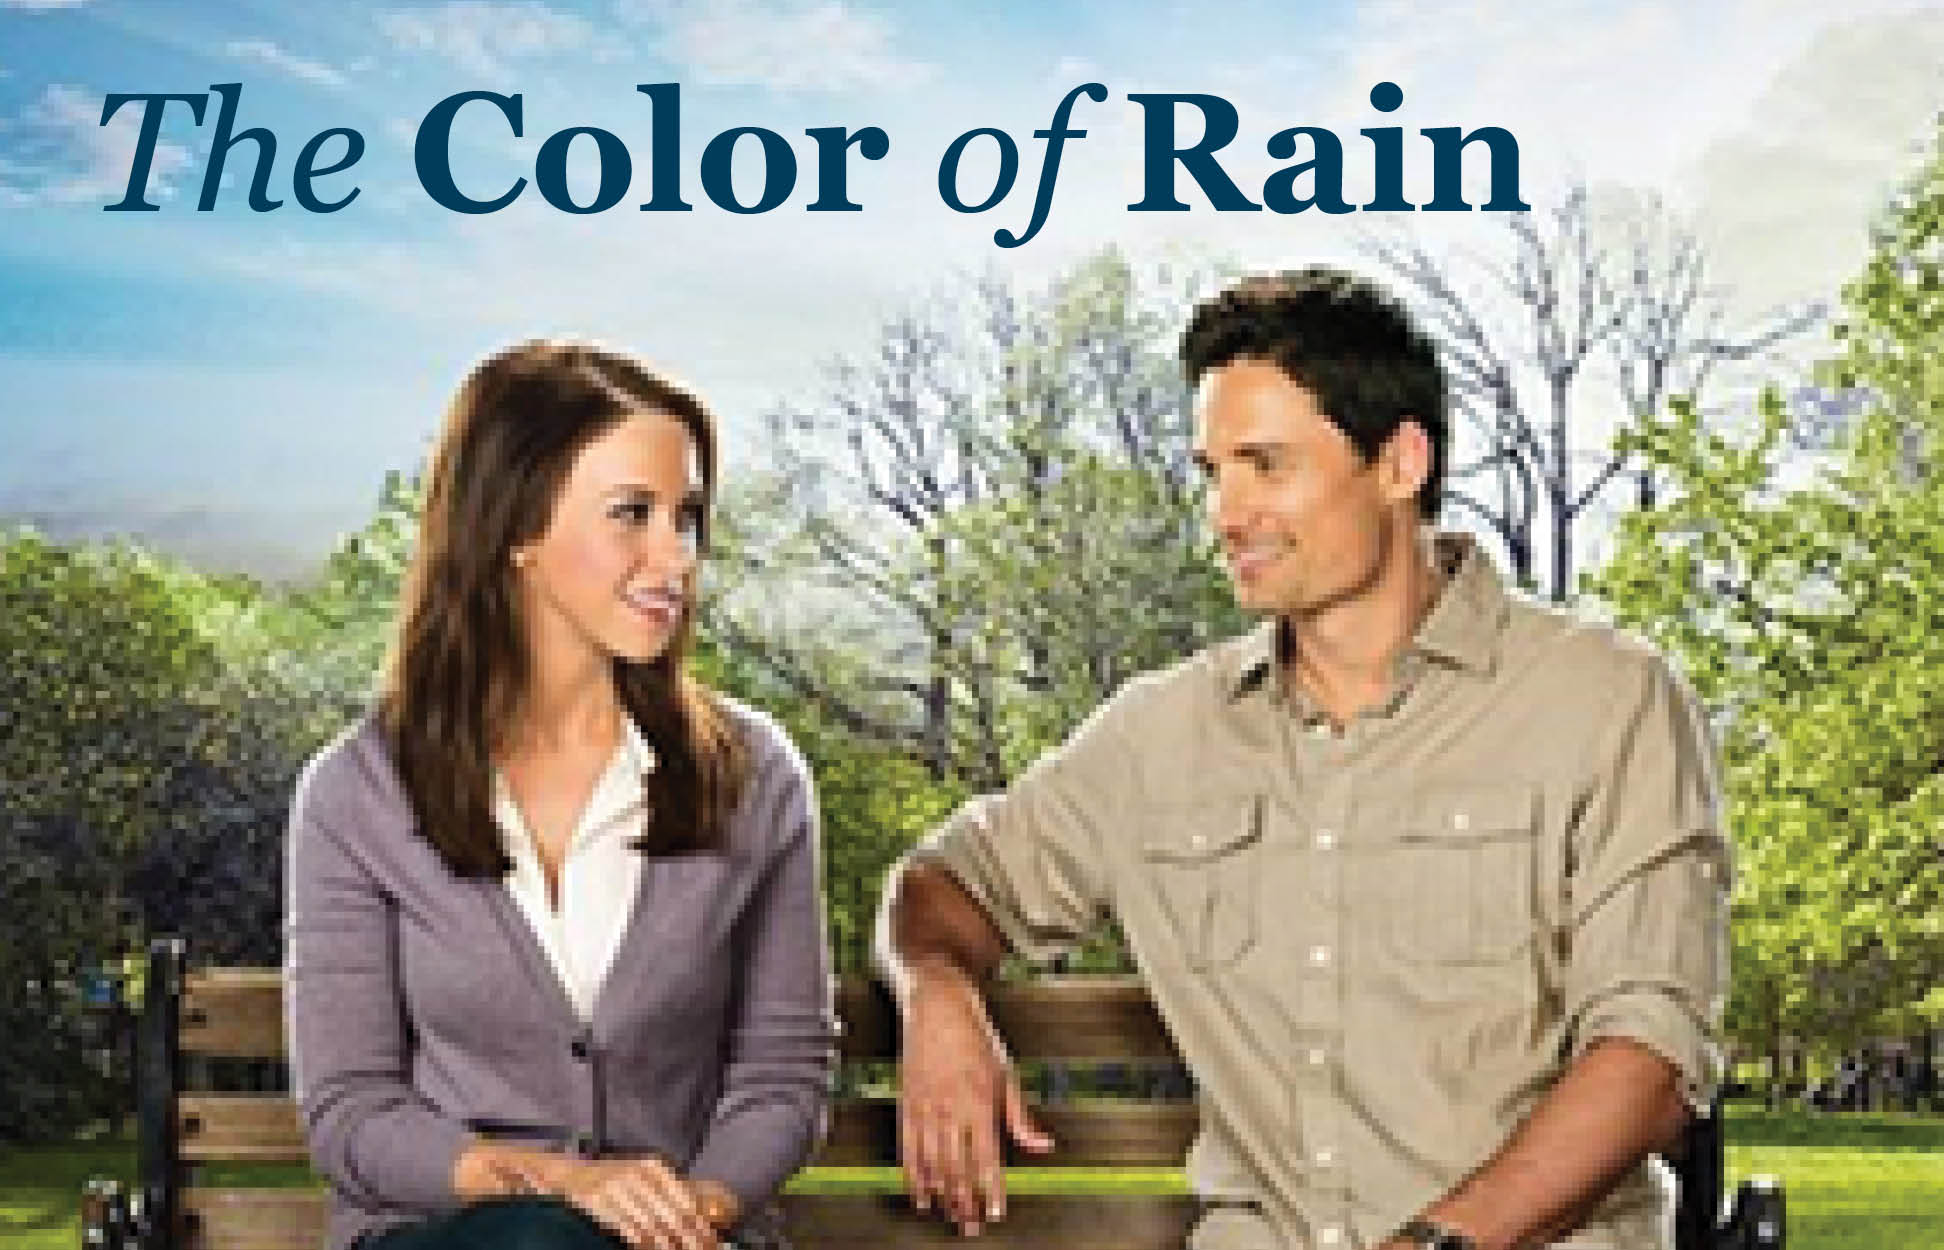 Color of Rain graphic photo